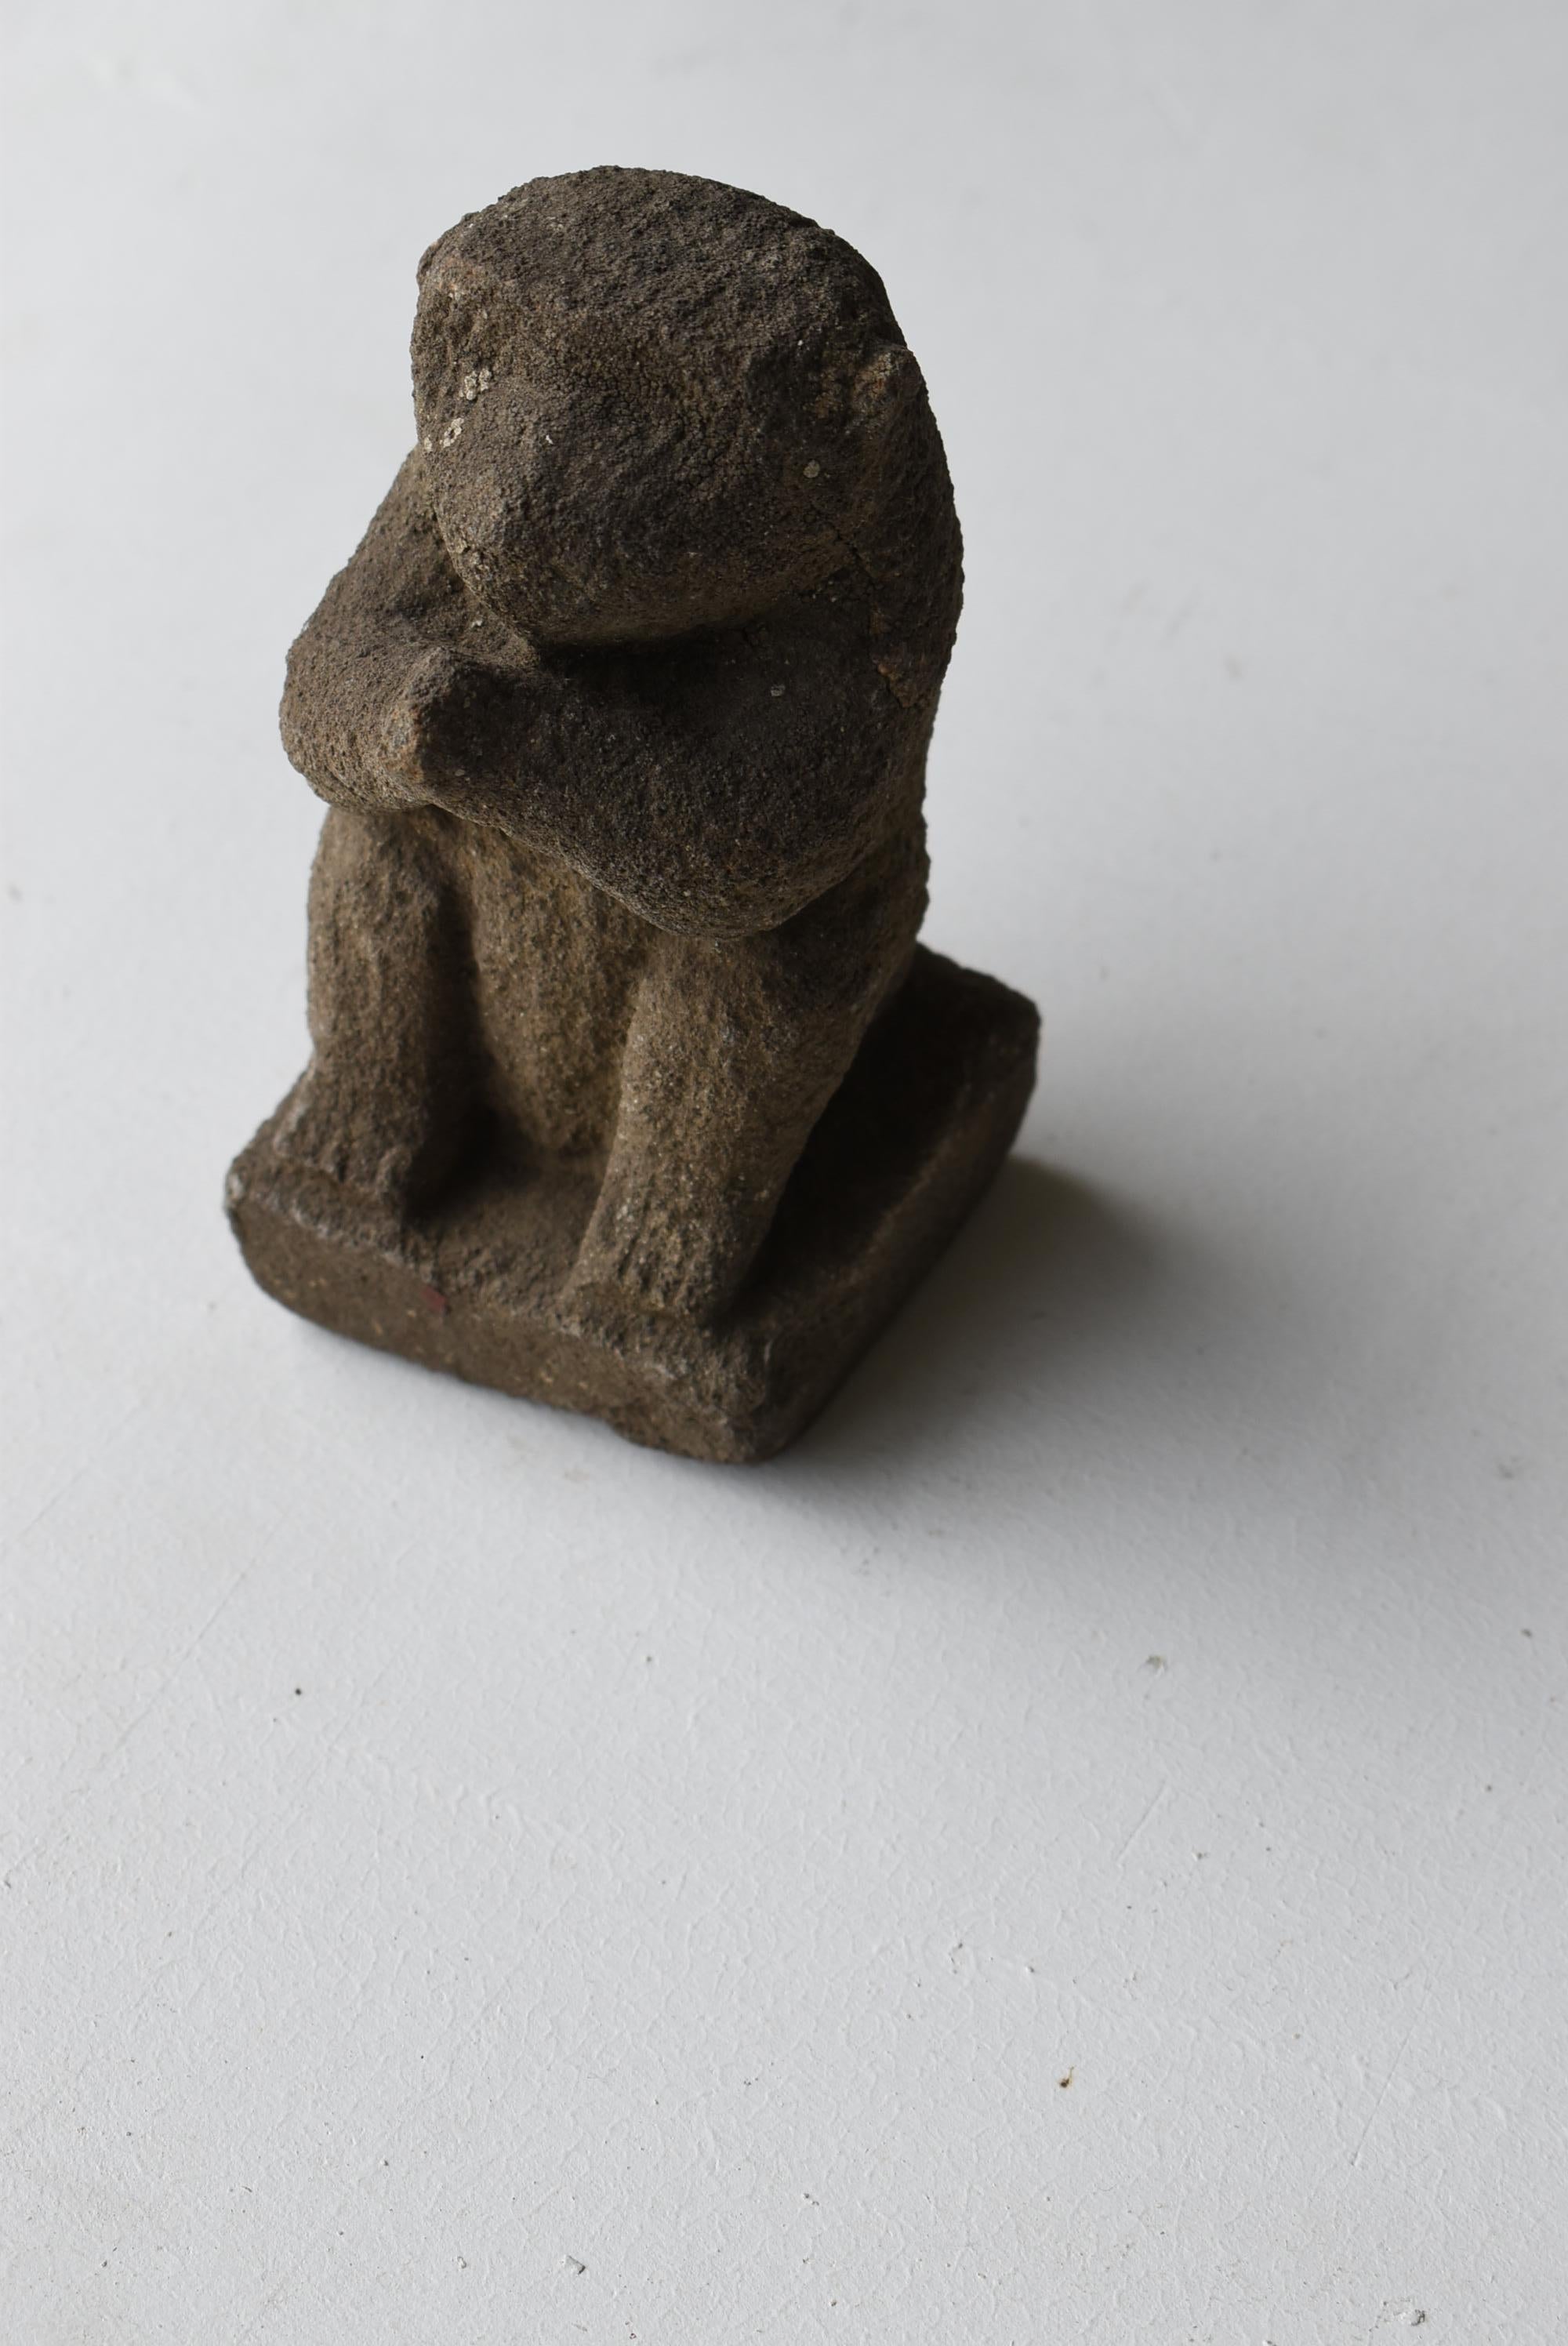 Japanese Antique Stone Craving Monkey 1800s-1860s / Buddhist Art Object Wabisabi 5